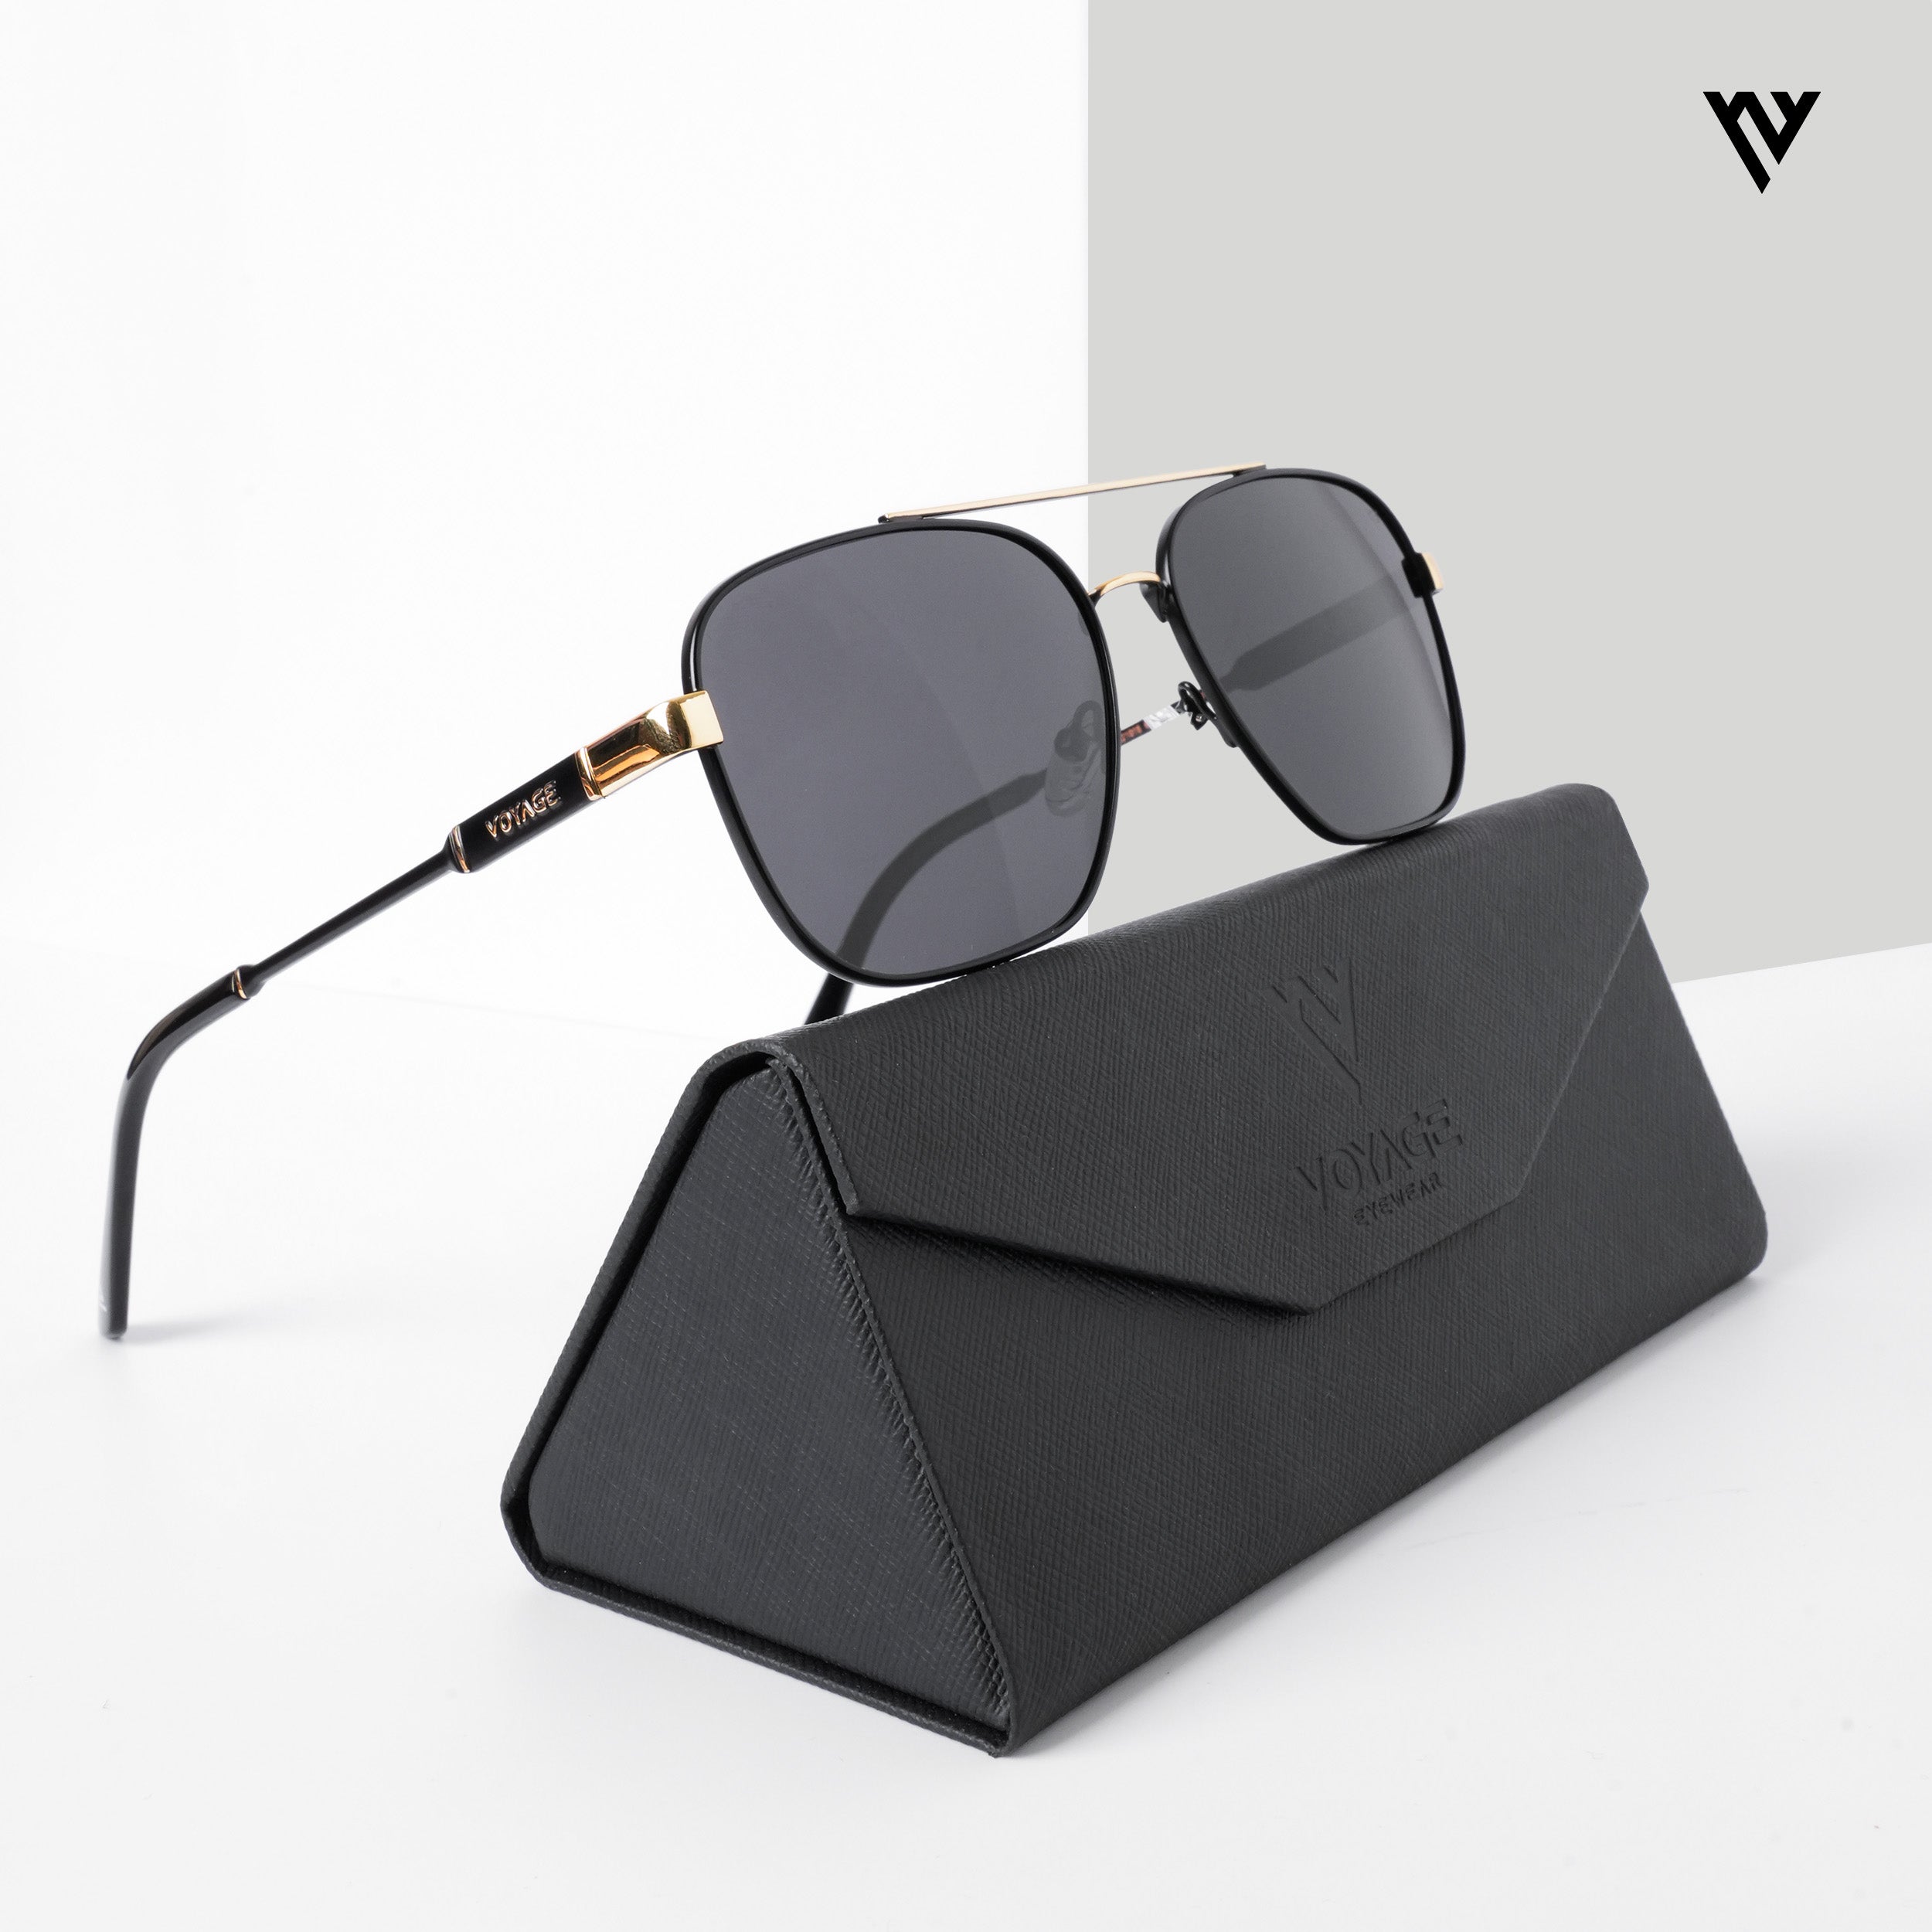 TERAISE Polarized Clip-on Sunglasses Anti-Glare UV400 - Walmart.com